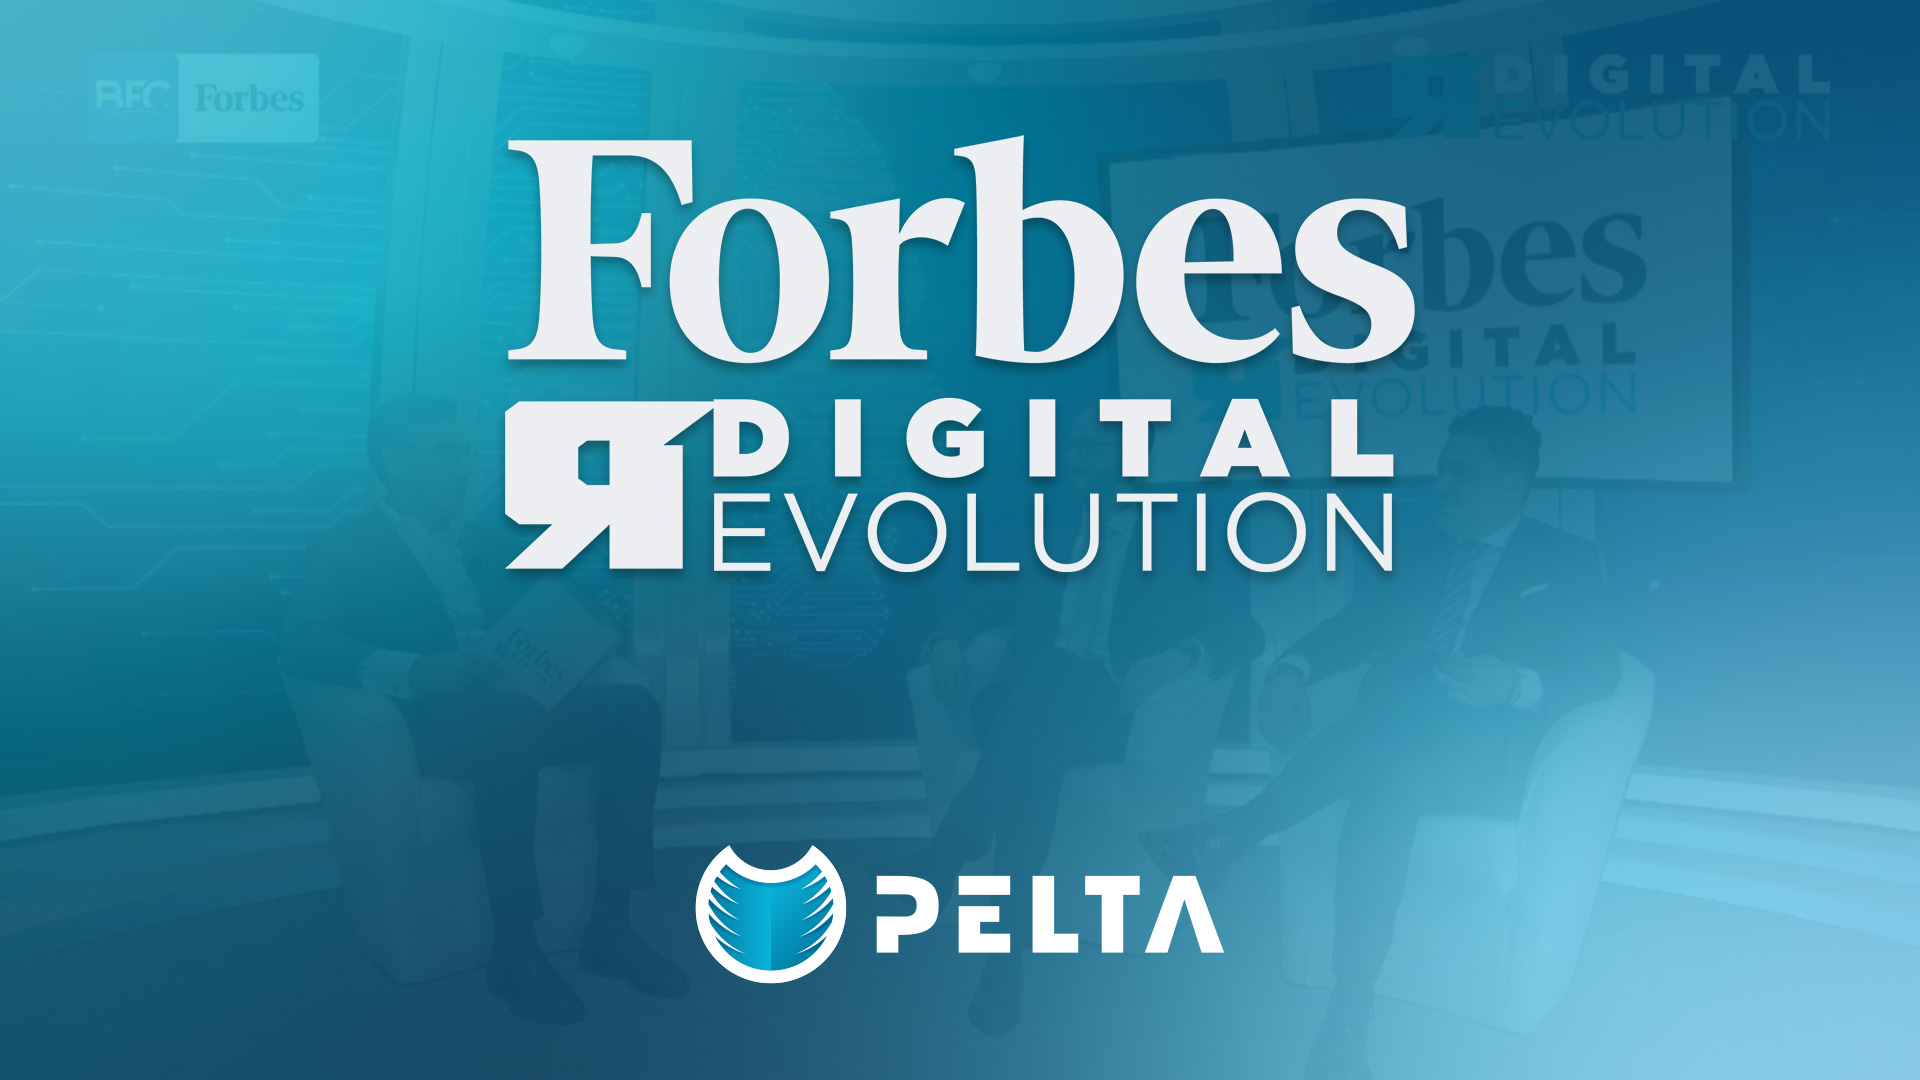 PELTA - Forbes Digital Revolution puntata 8